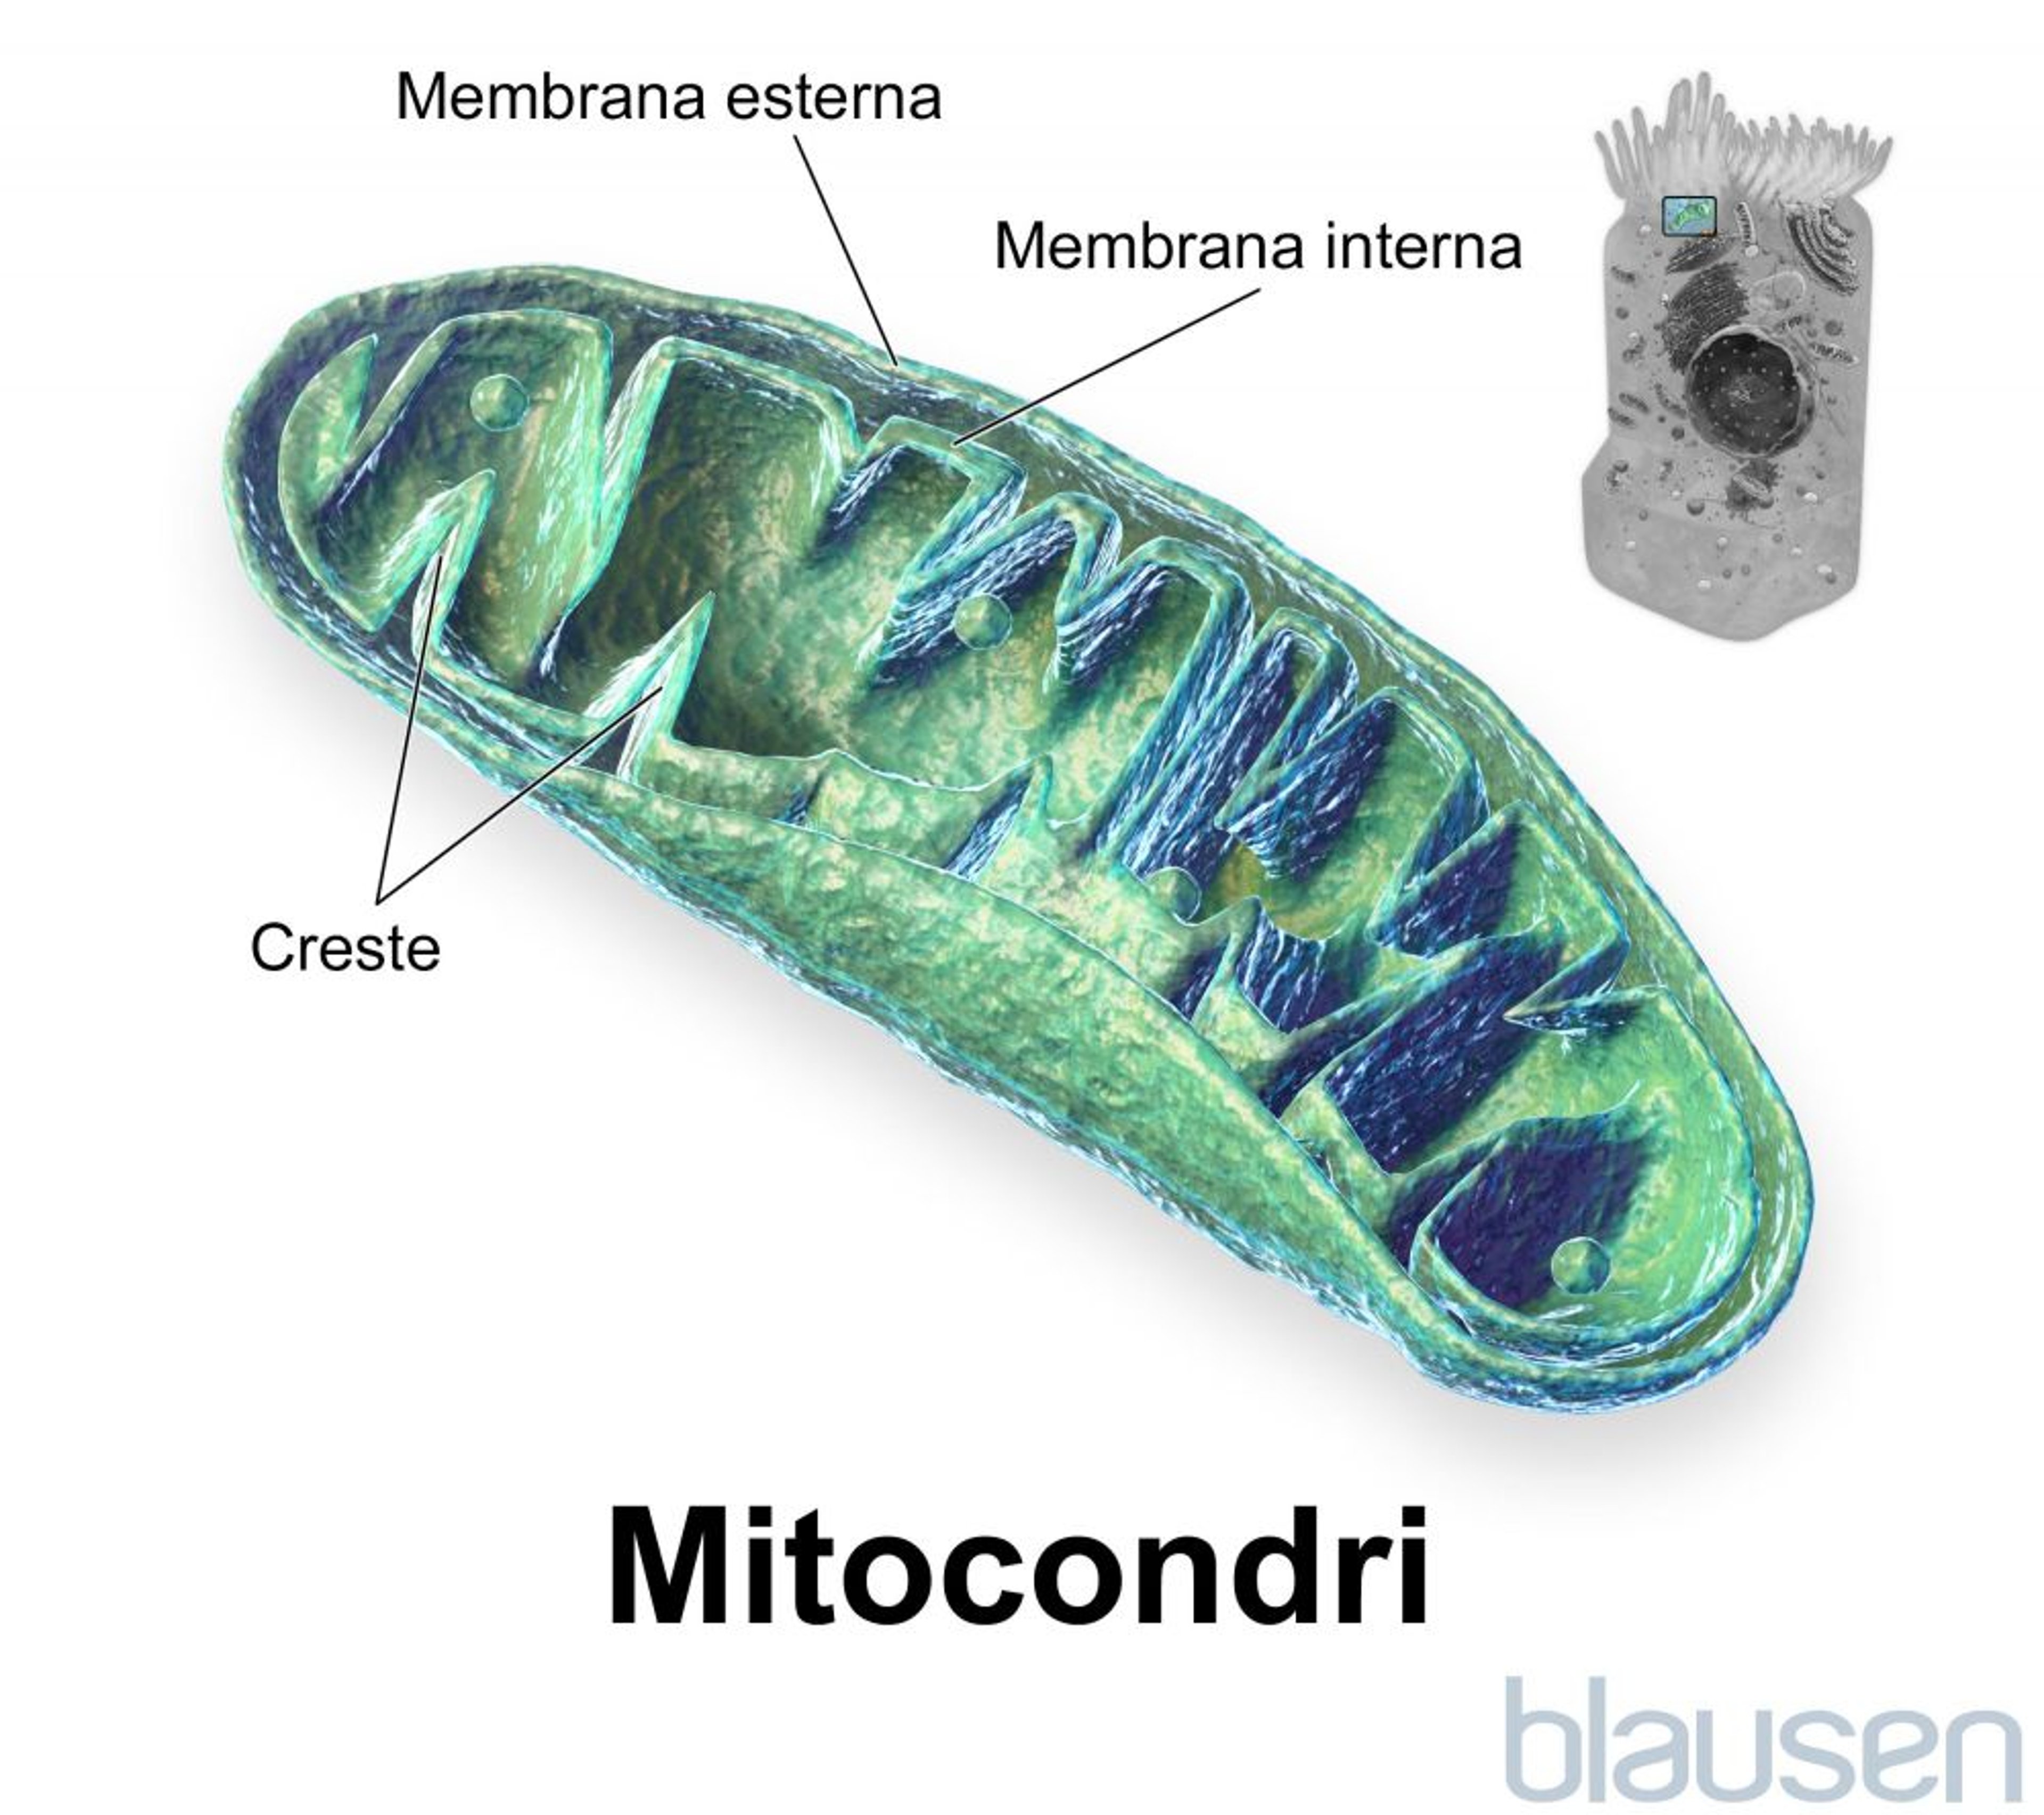 Interno di un mitocondrio